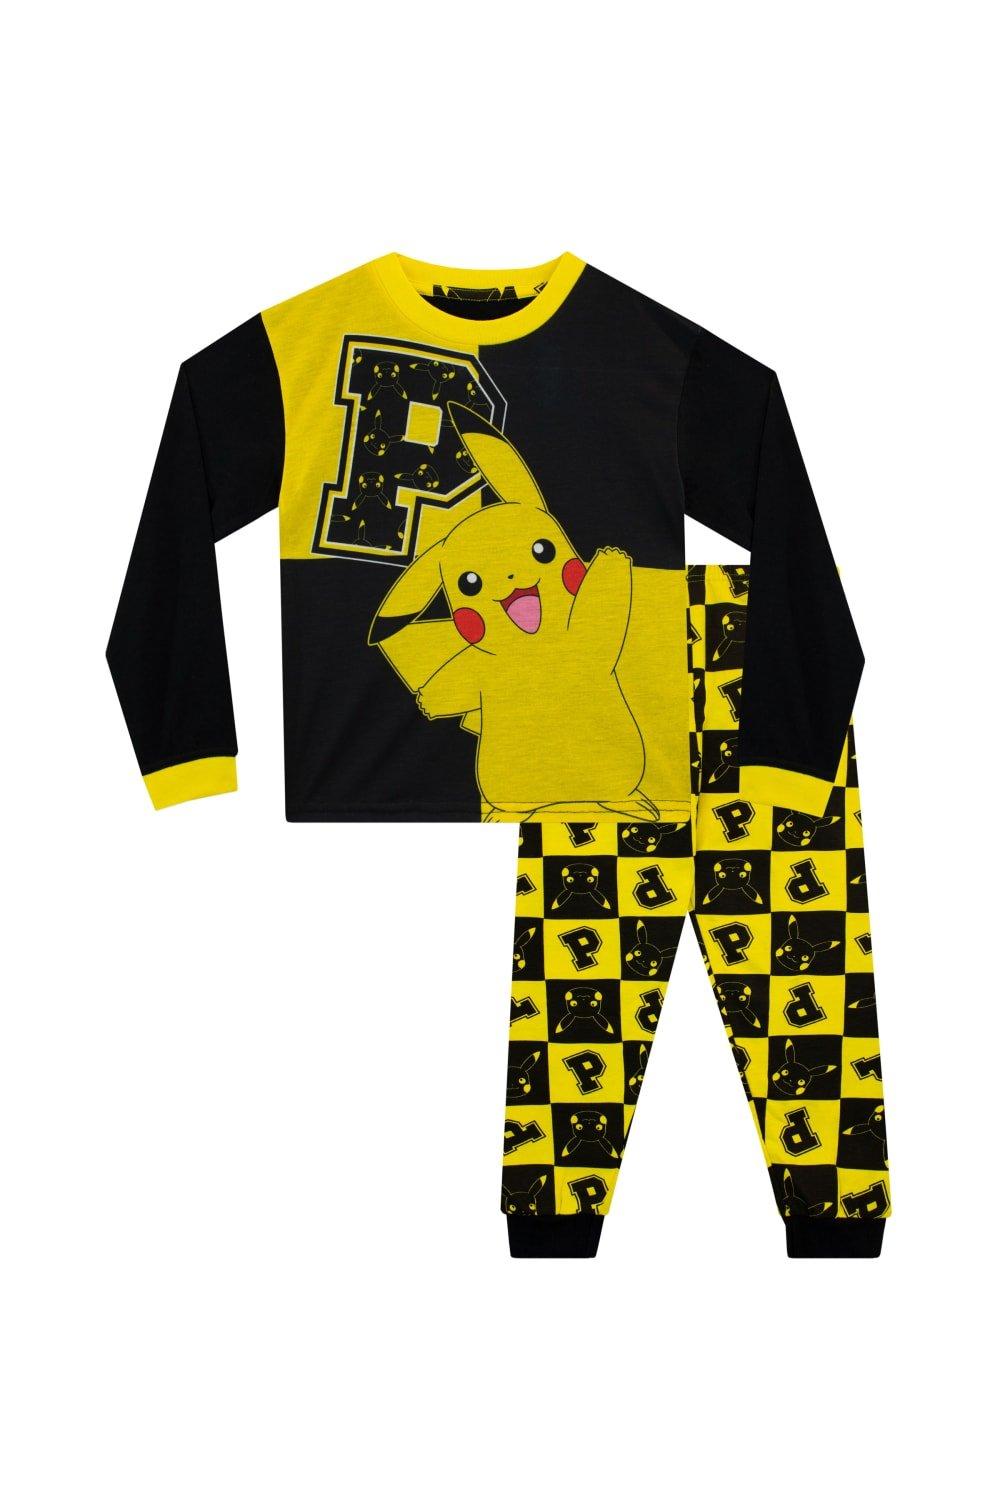 Pikachu Pyjamas